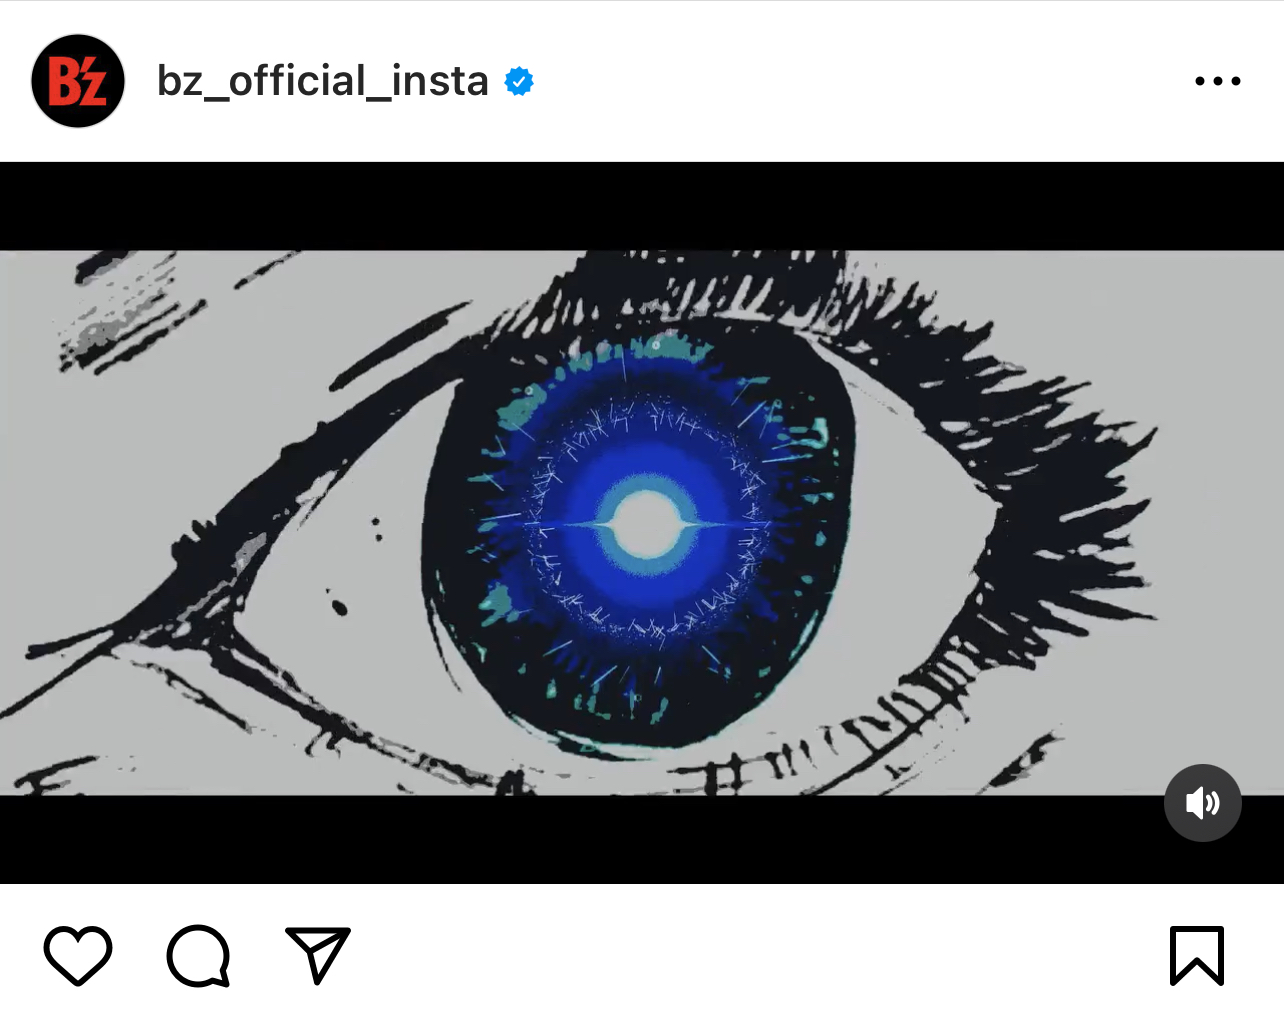 B'z公式Instagramが投稿した「声明」のミュージック・ビデオ